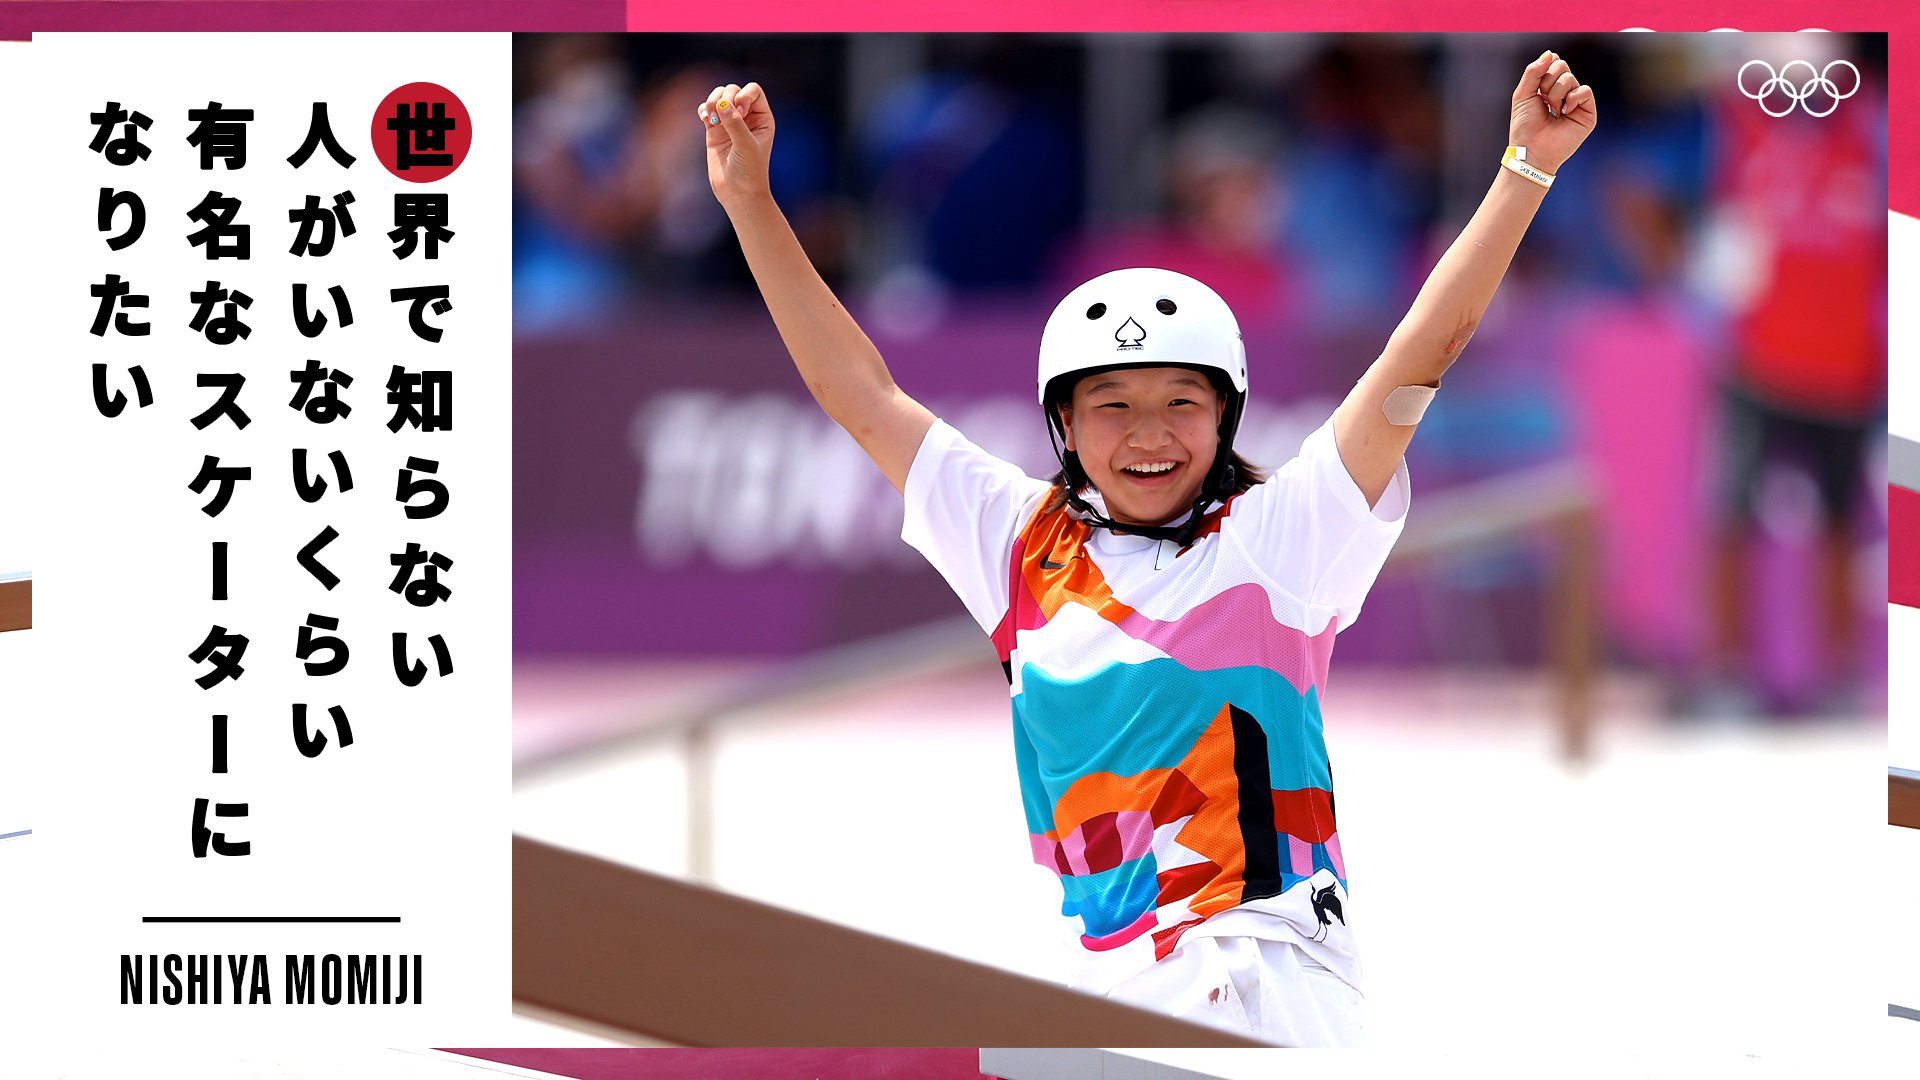 オリンピック Tokyo のスケートボード女子ストリートで日本史上最年少となる13歳330日で金メダルを獲得した西矢椛選手 世界で知らない人がいないくらい有名なスケーターになりたい オリンピック オリンピック名言 T Co 8vuwq9vg3u